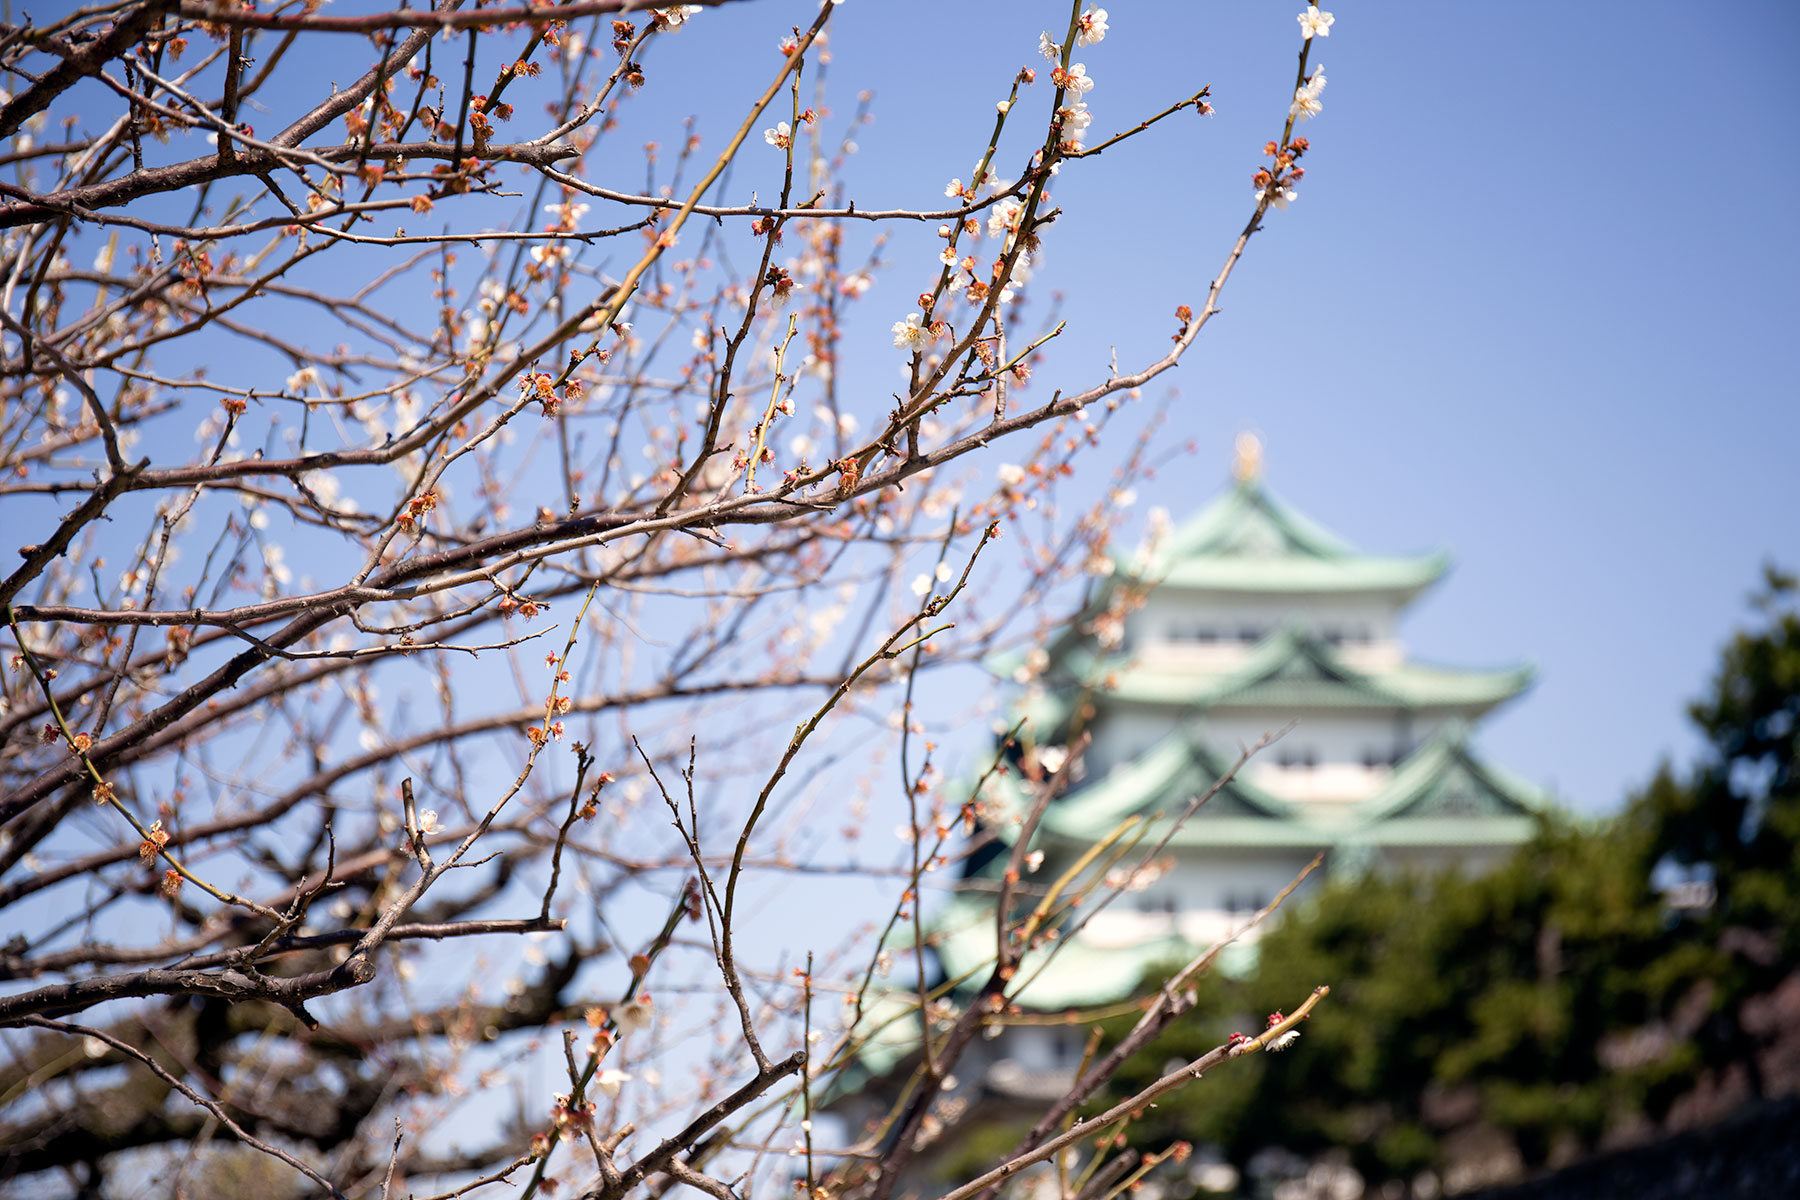 桜のお花見 名古屋城 1分咲き